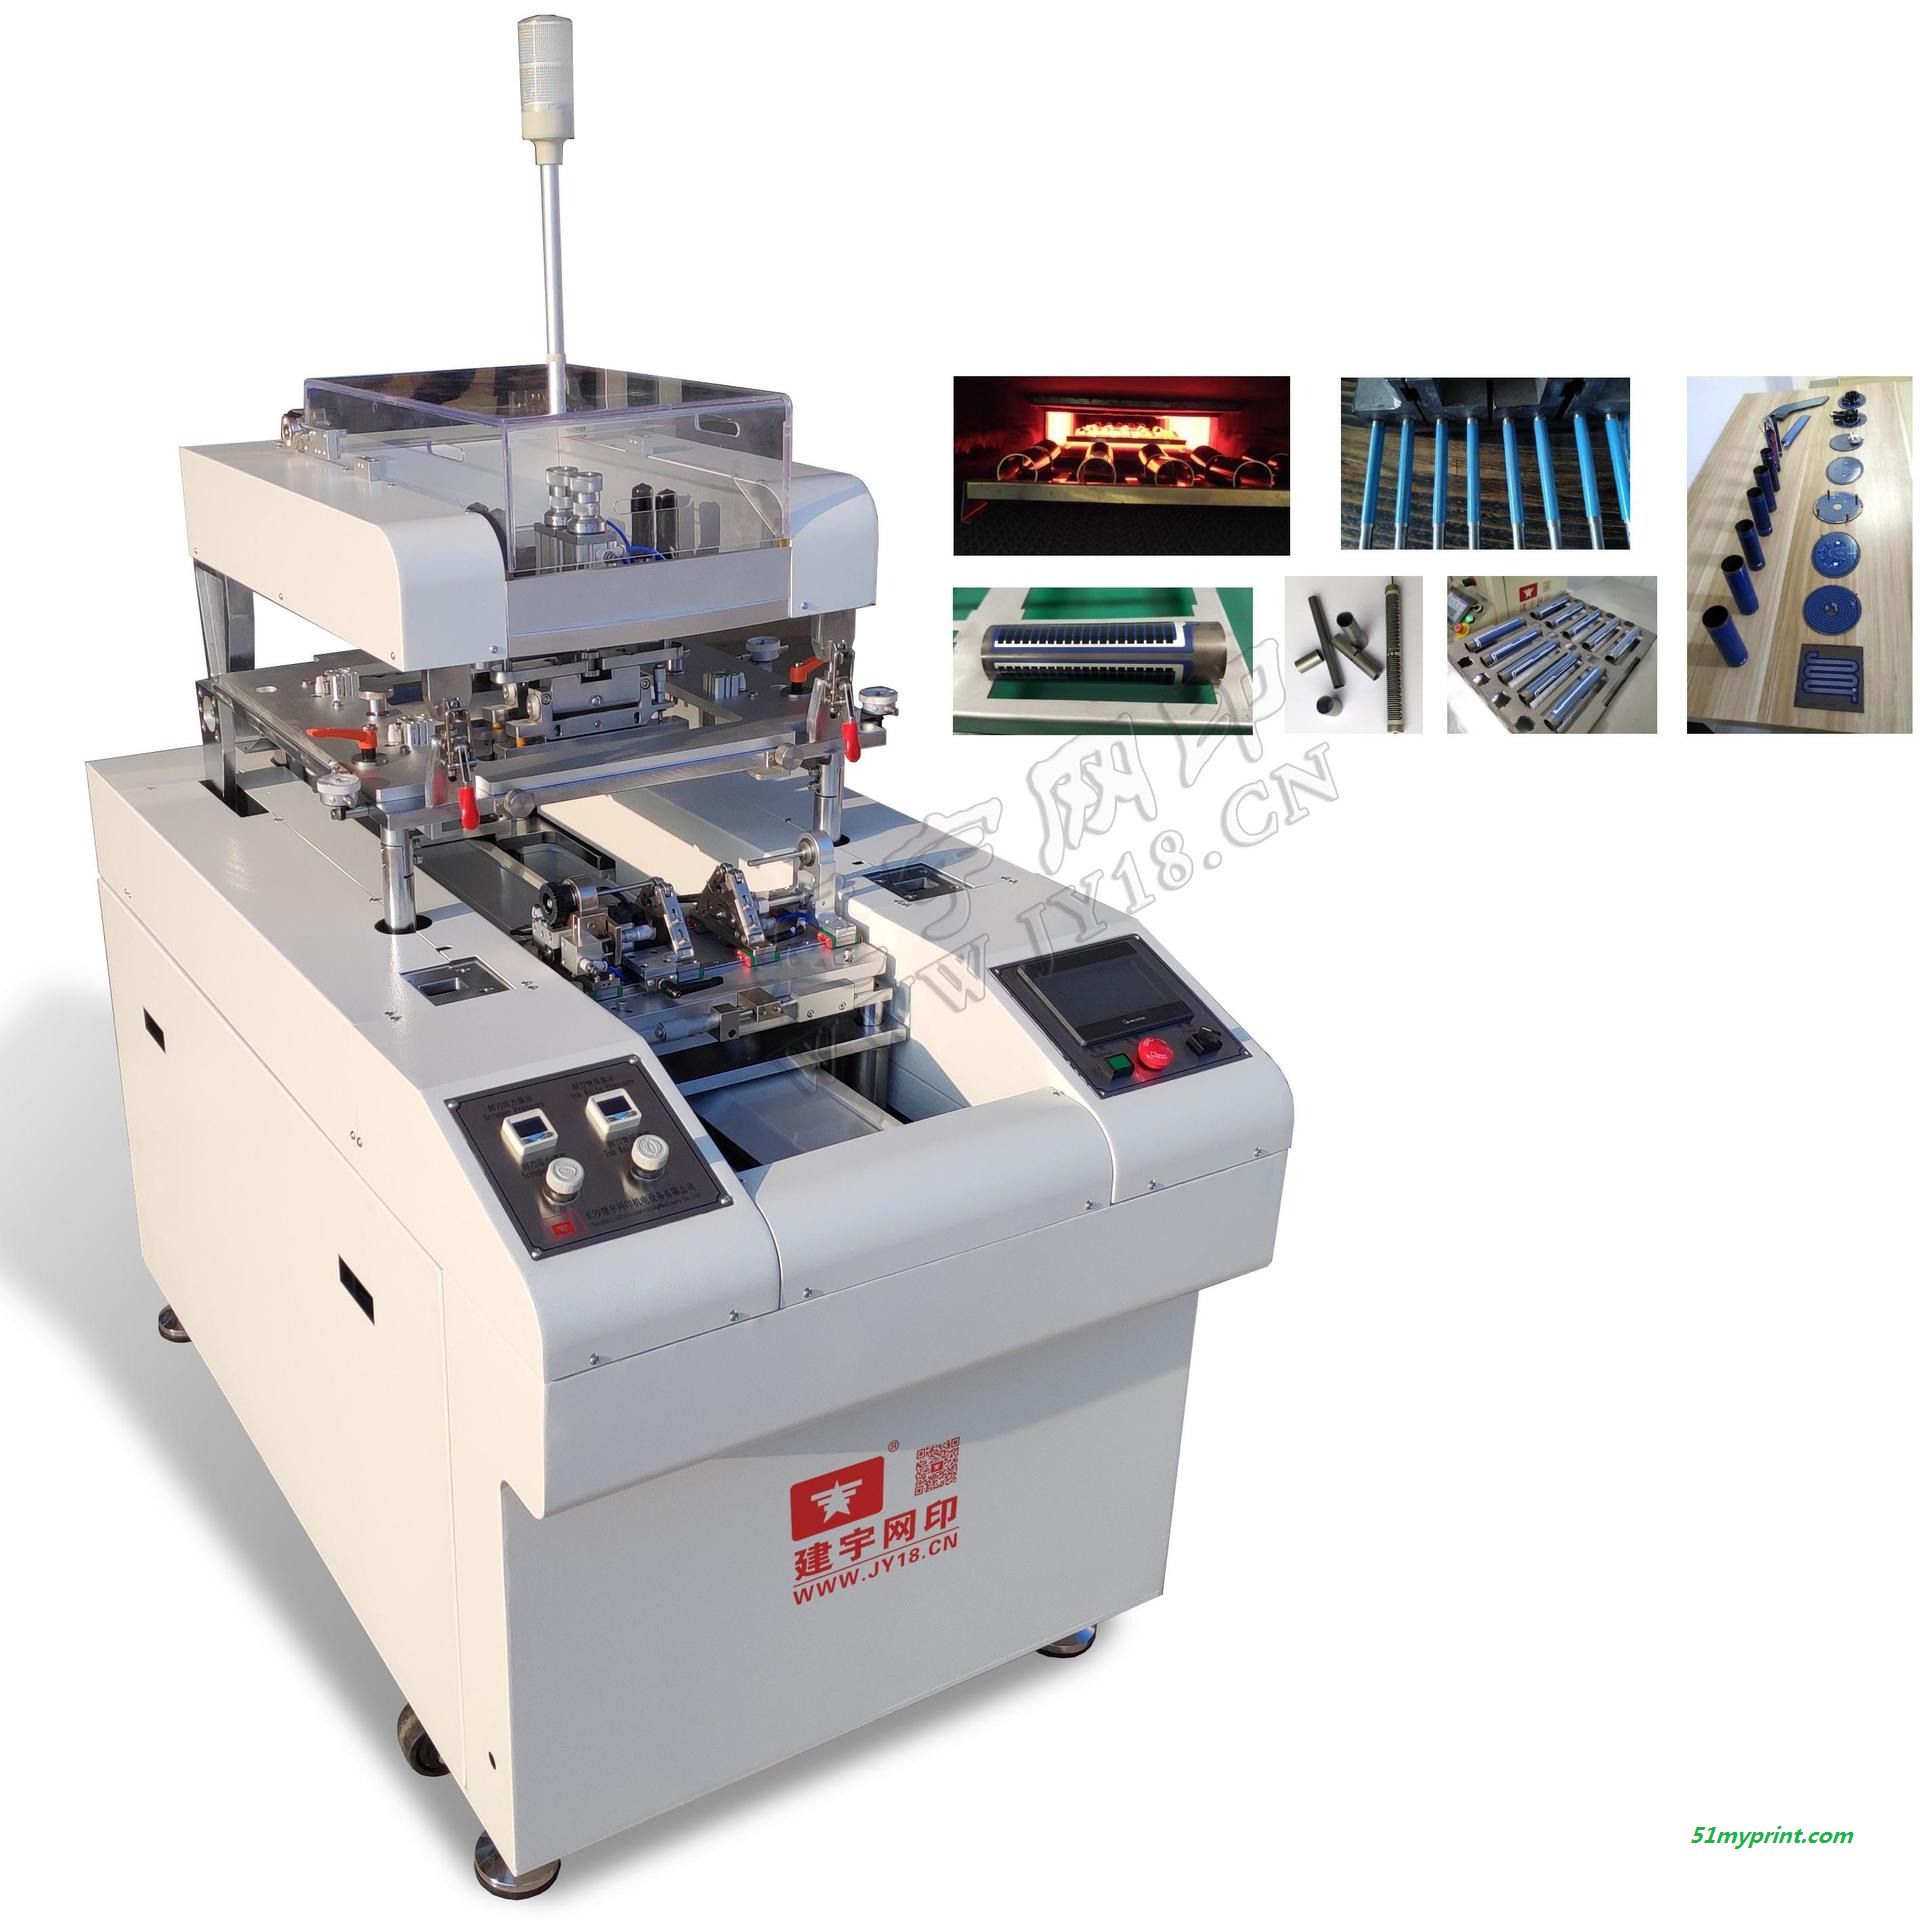 厂家自主研发即热式电热水龙头印刷机 可用于即热式电热水器印刷 建宇网印